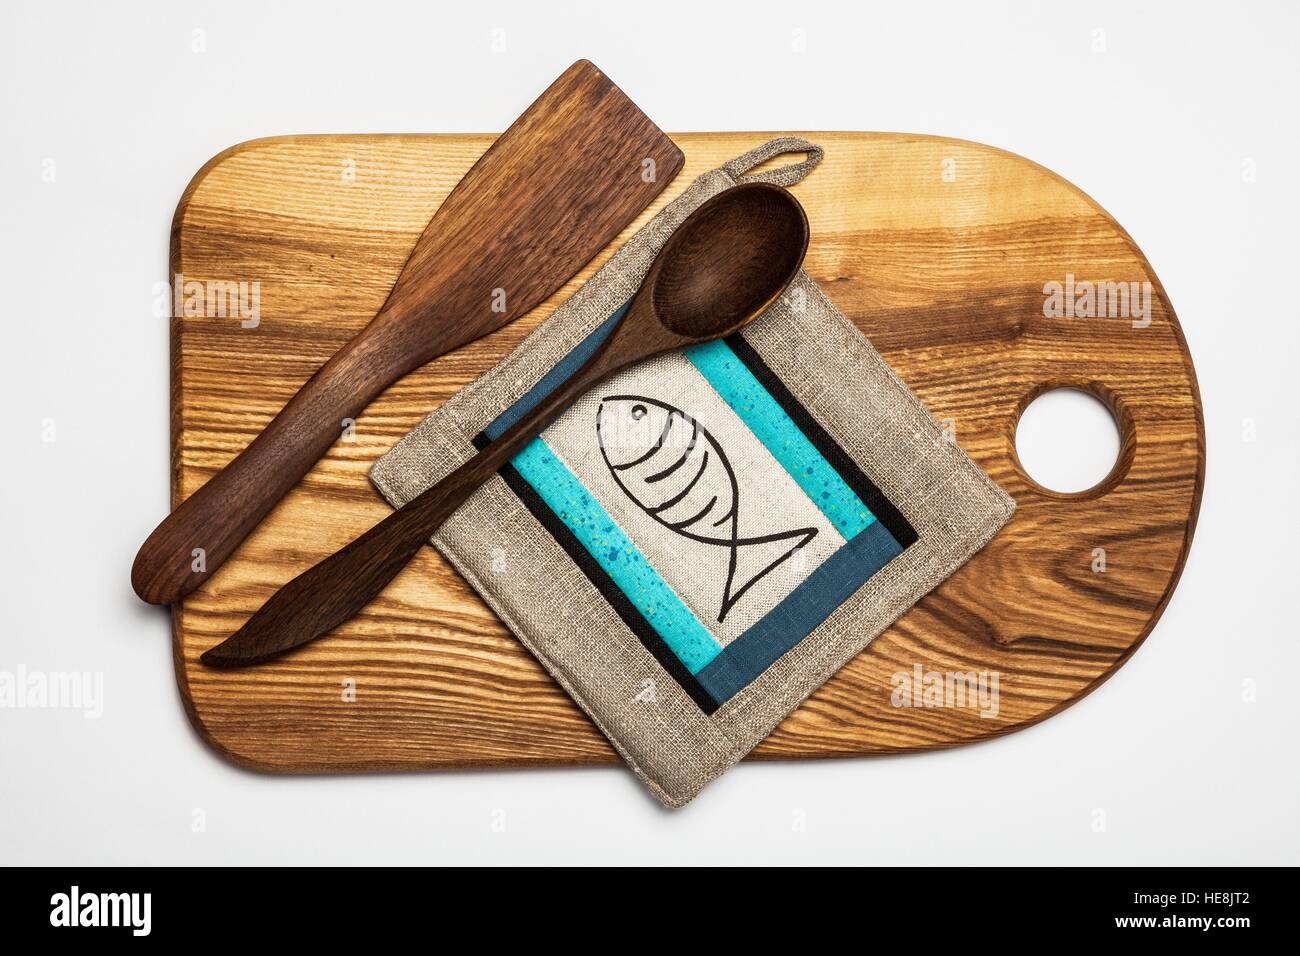 Matériel de cuisine - table de coupe en bois,et outils , manique patchwork Banque D'Images